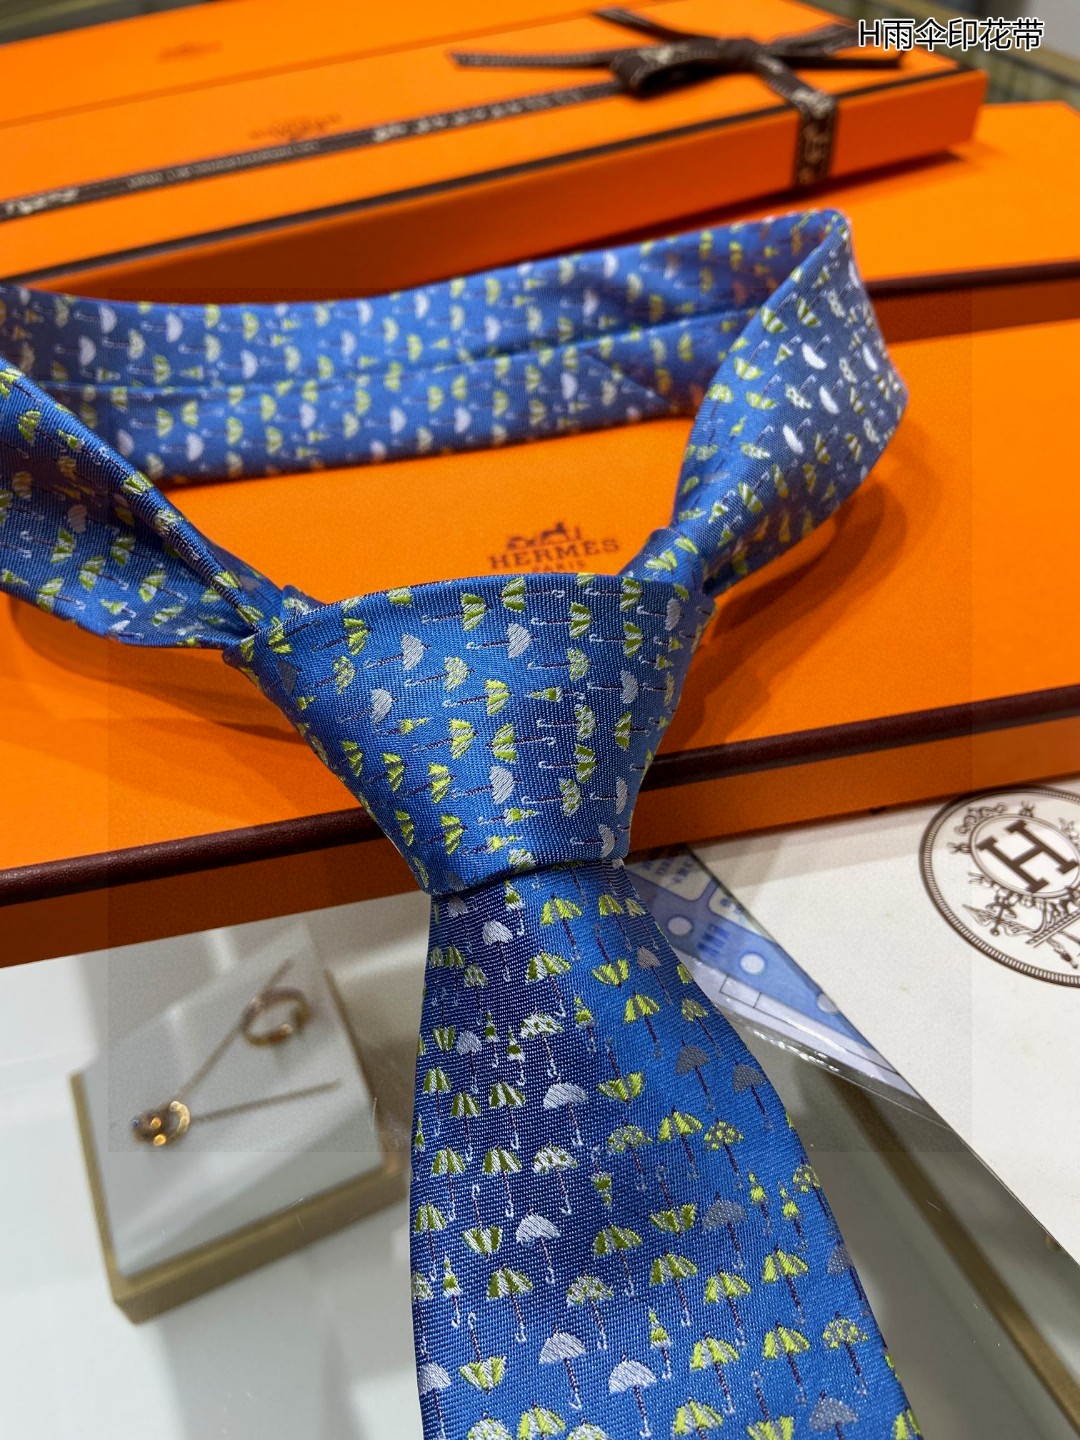 男士新款领带系列H雨伞印花领带稀有H家每年都有一千条不同印花的领带面世从最初的多以几何图案表现骑术活动为